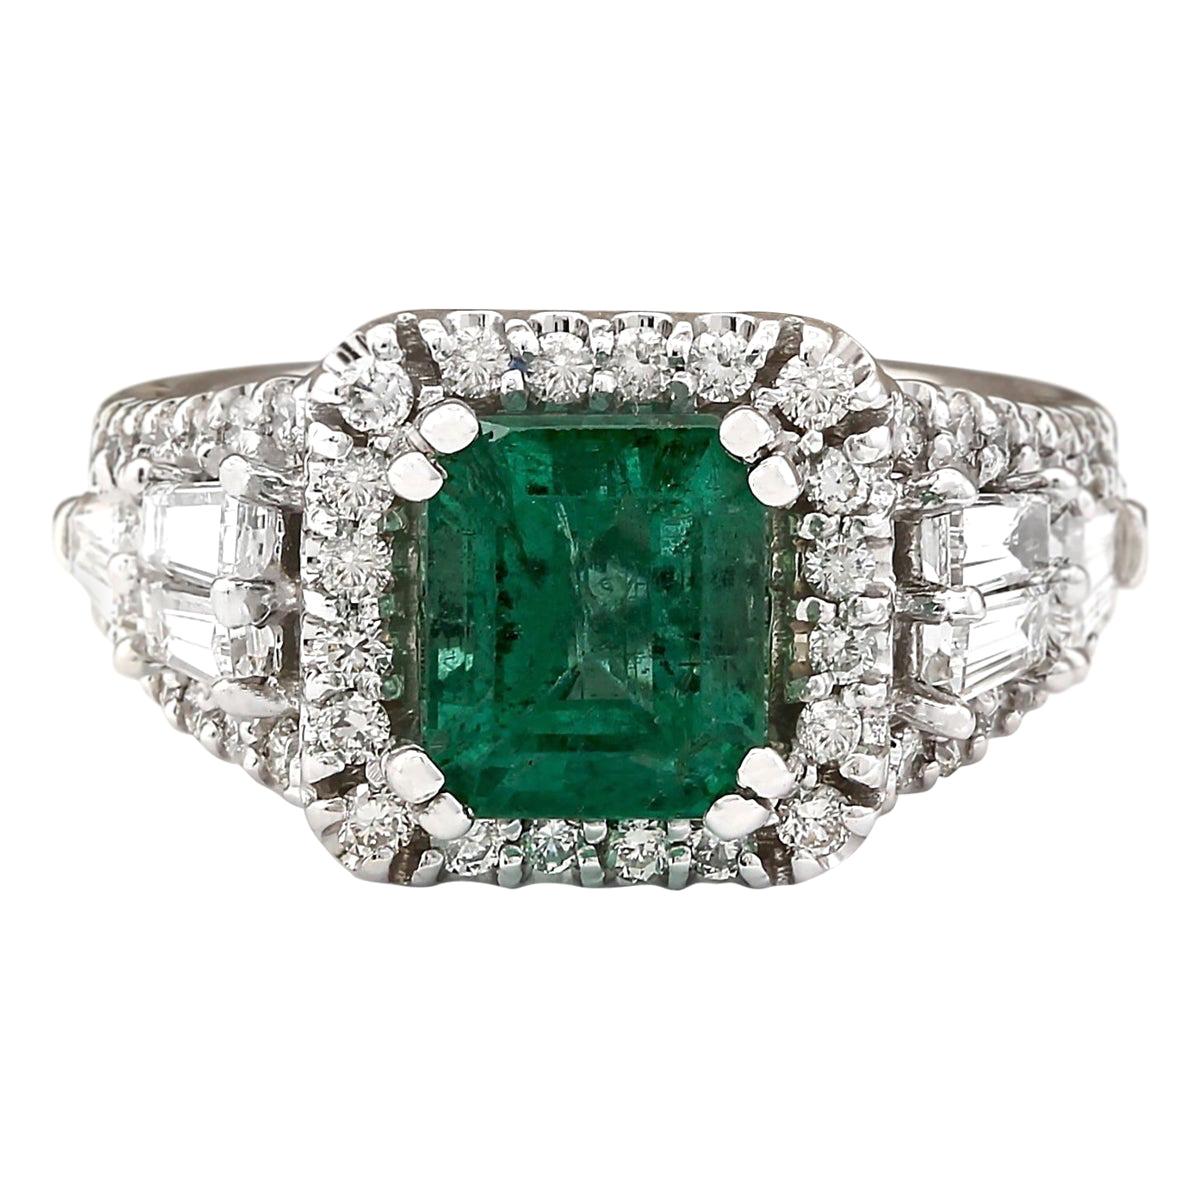 4.05 Carat Natural Emerald 18 Karat White Gold Diamond Ring